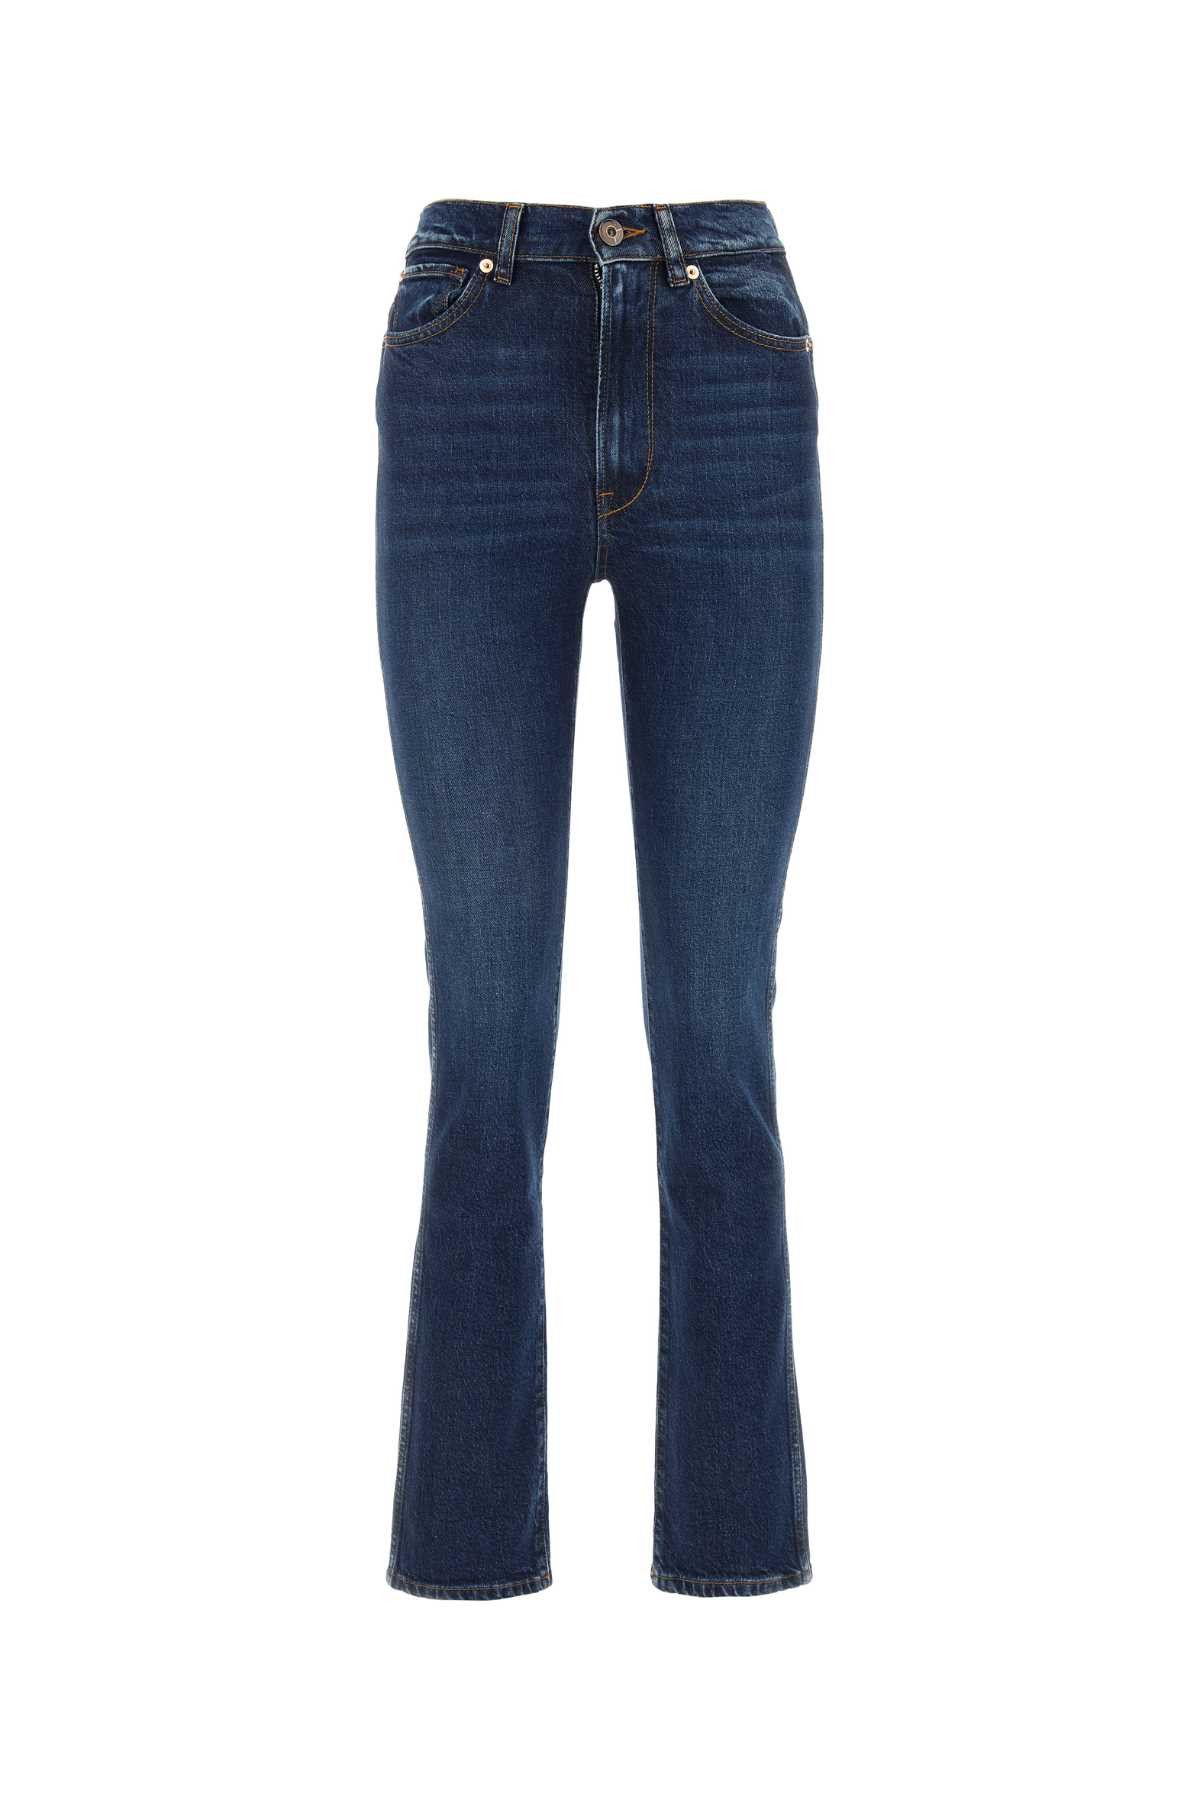 3x1 Denim Maddie Jeans | Grailed